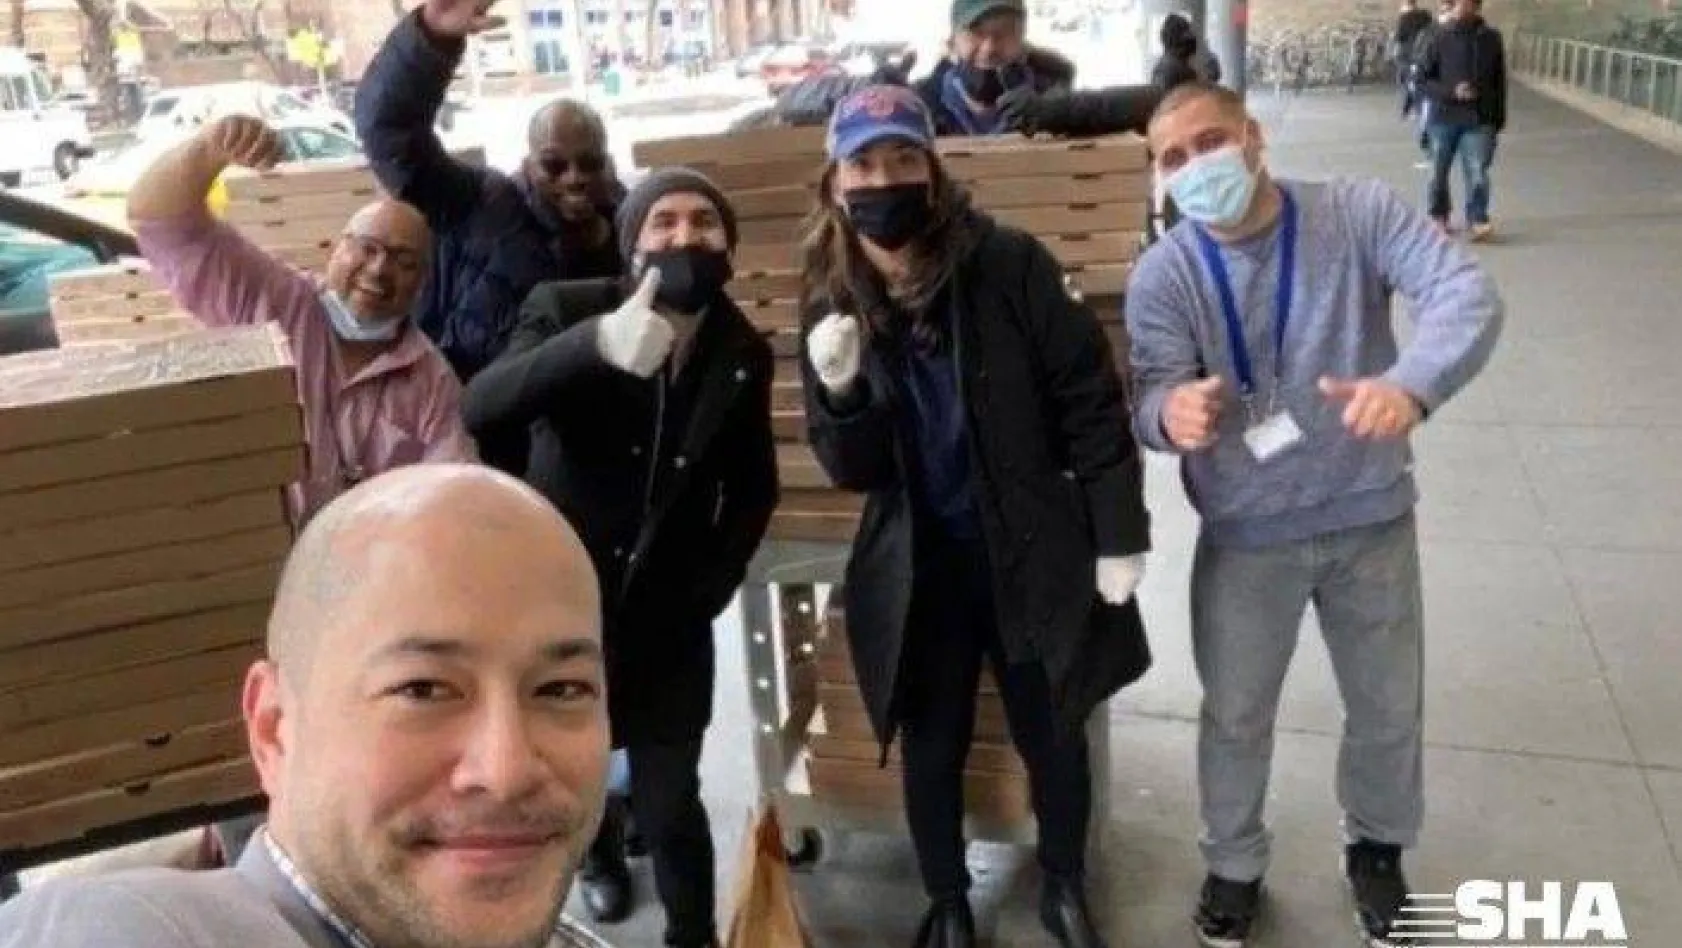 New York'un Türk pizzacısı Hakkı Akdeniz, evsizlere ve Türk öğrencilere pizza ve maske dağıttı